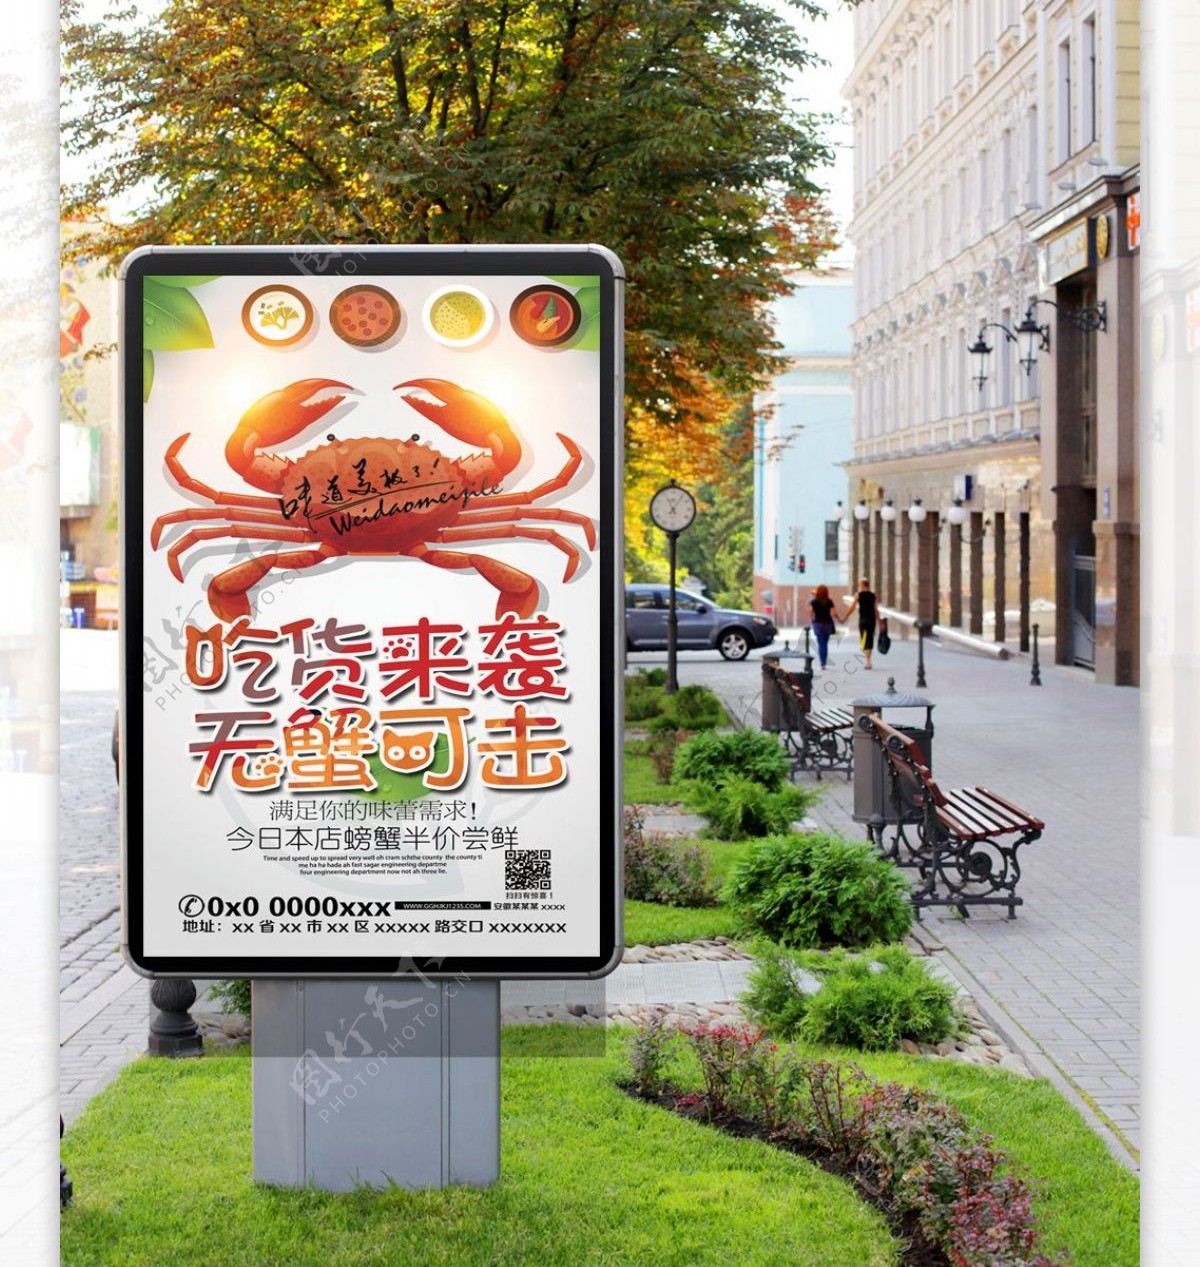 美食螃蟹促销海报